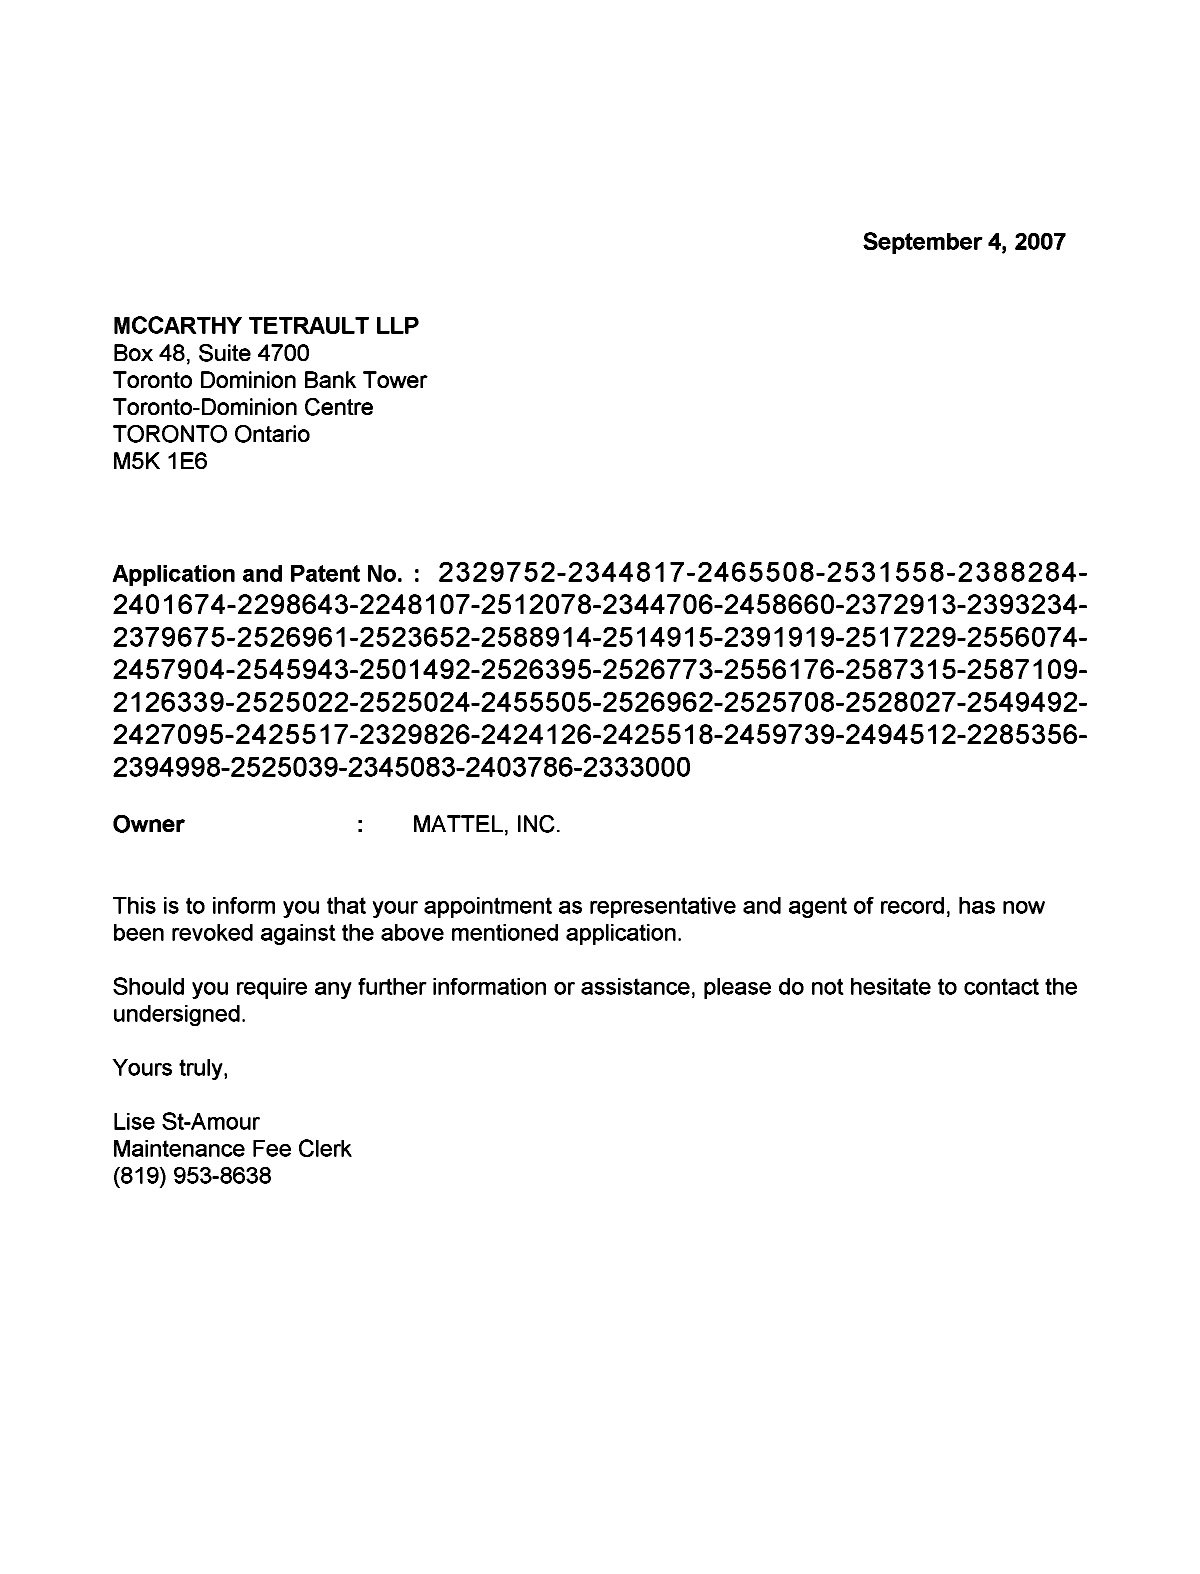 Document de brevet canadien 2525024. Correspondance 20070904. Image 1 de 1